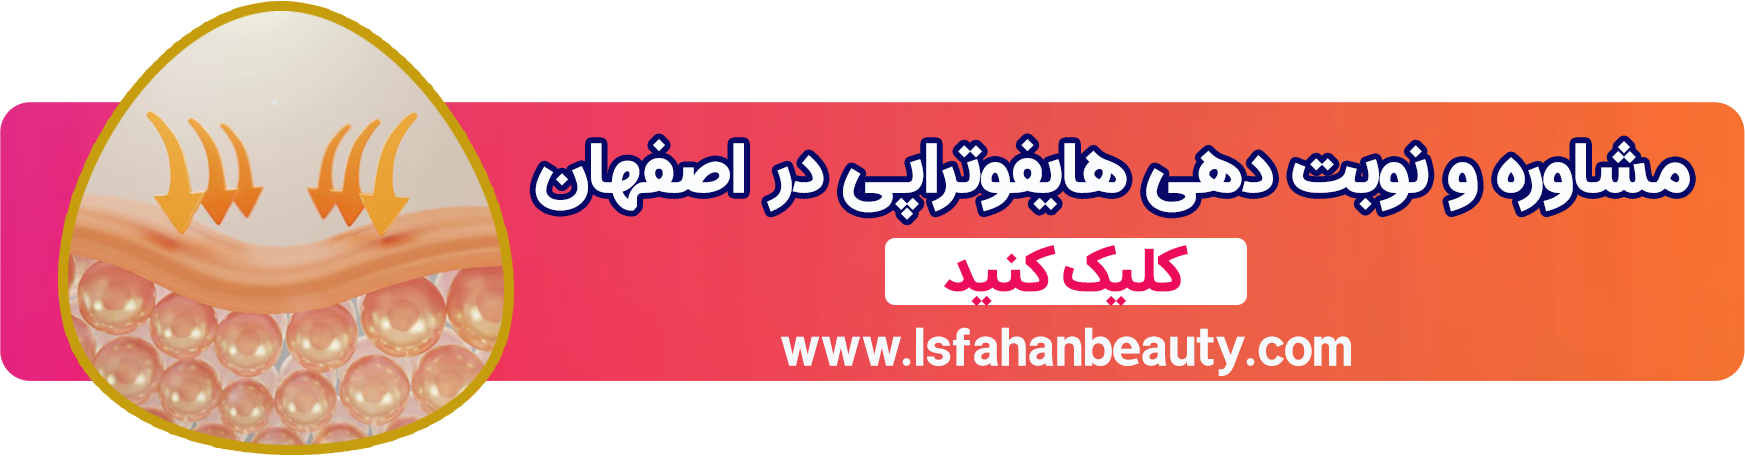 هایفوتراپی در اصفهان | اصفهان بیوتی